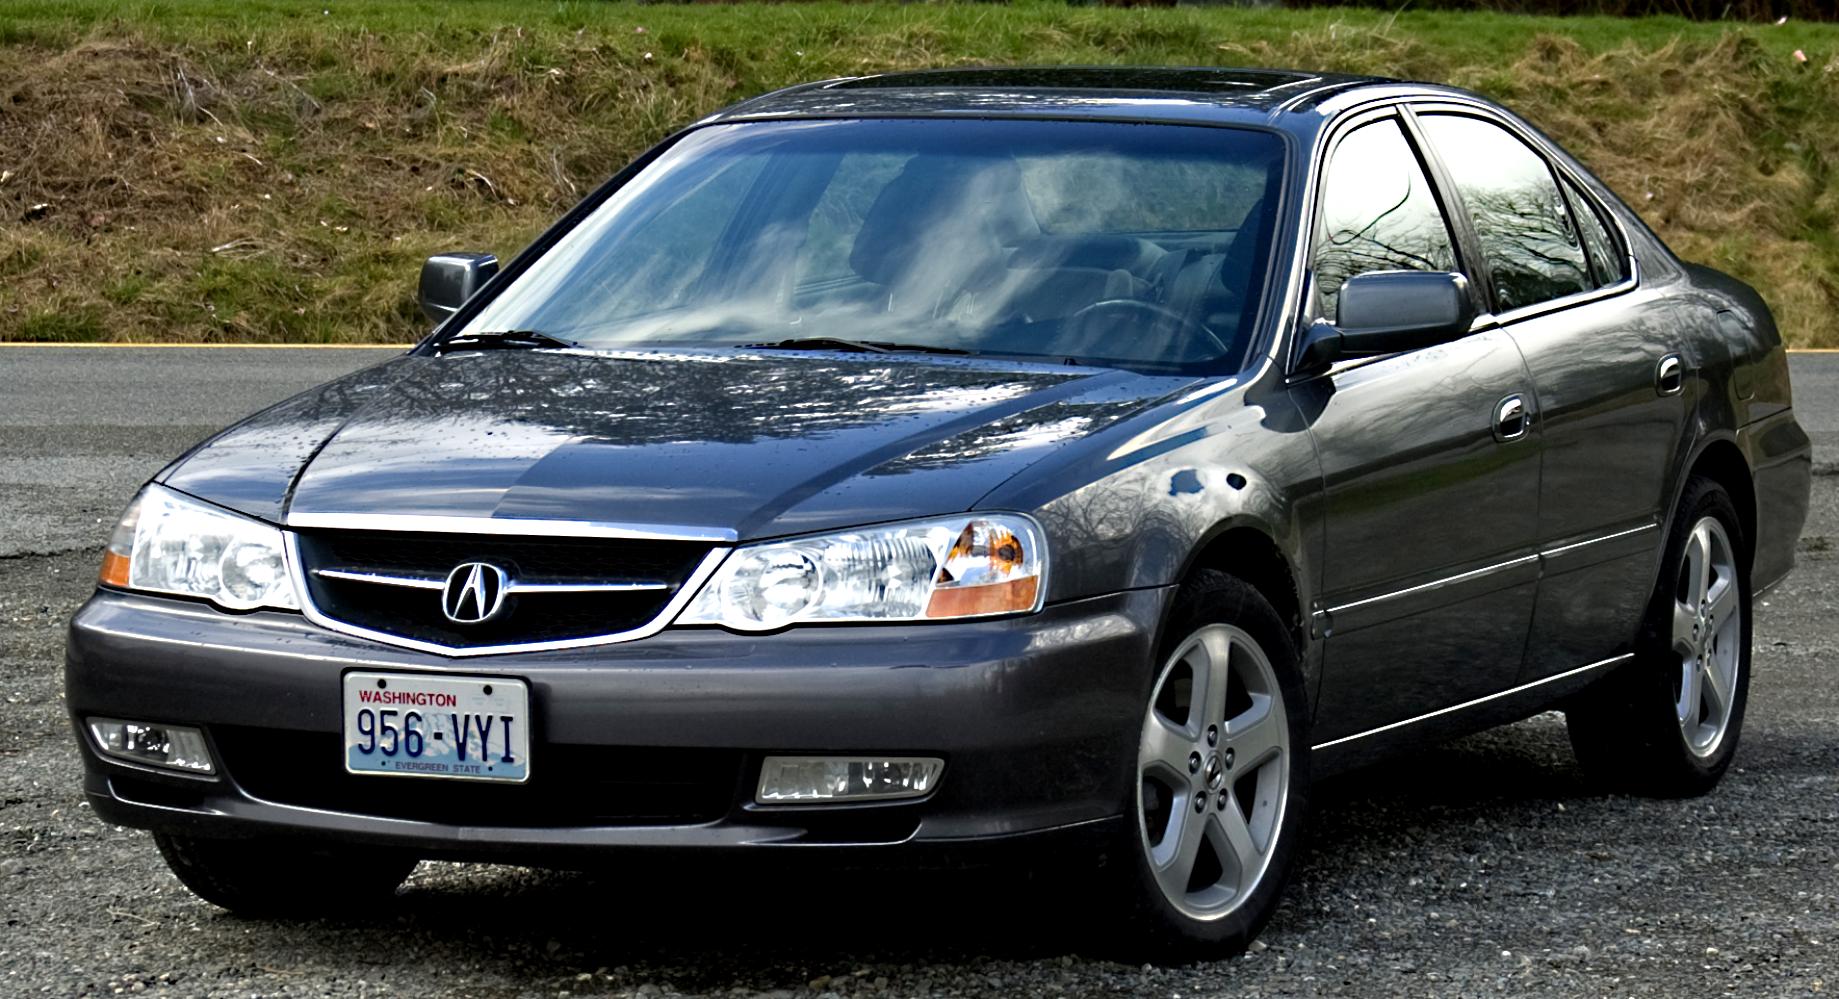 Acura TL 2003 #5.